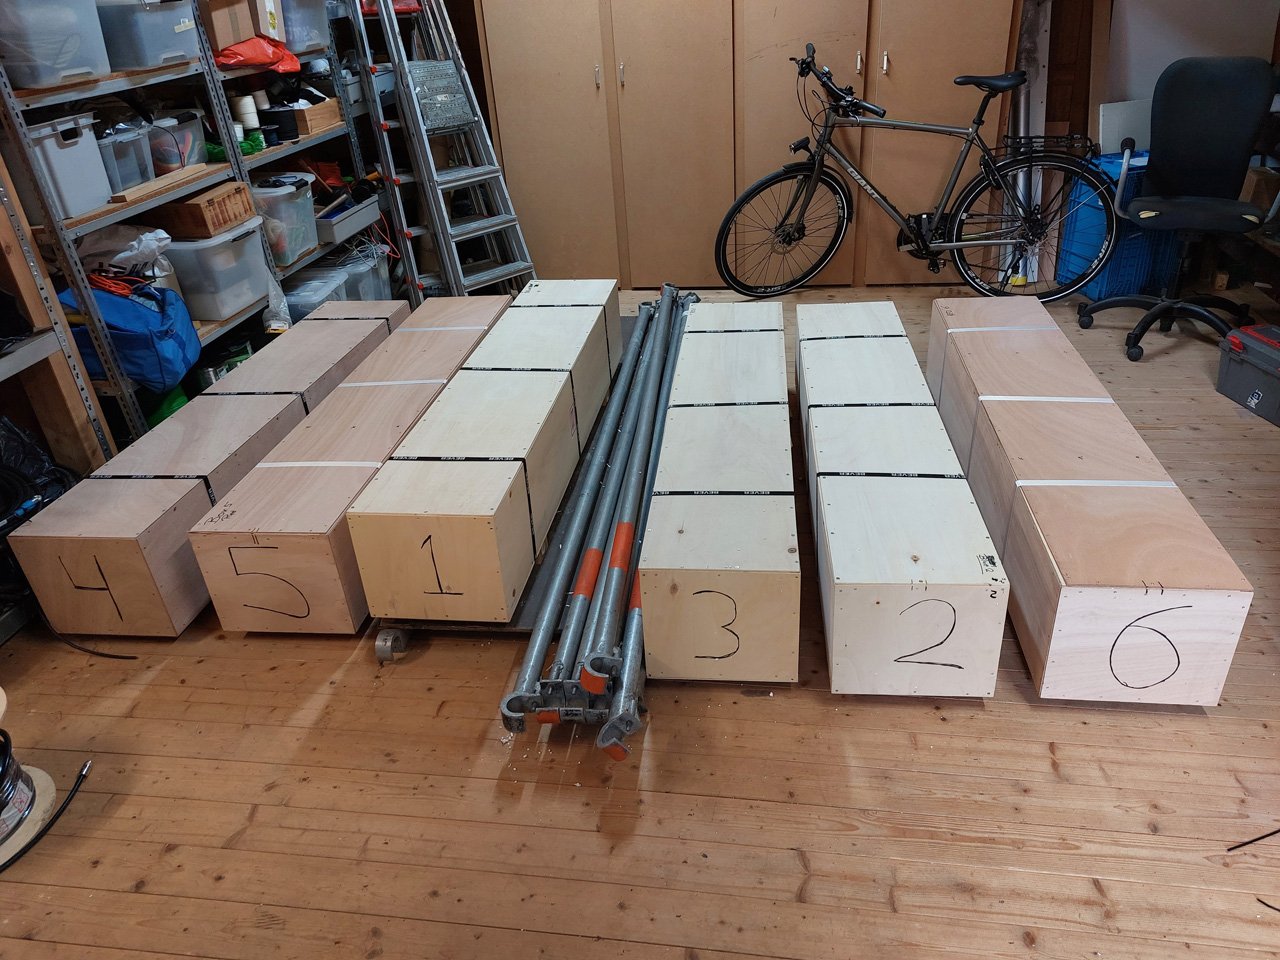 6 Kisten bereit für den Transport zu Kh8